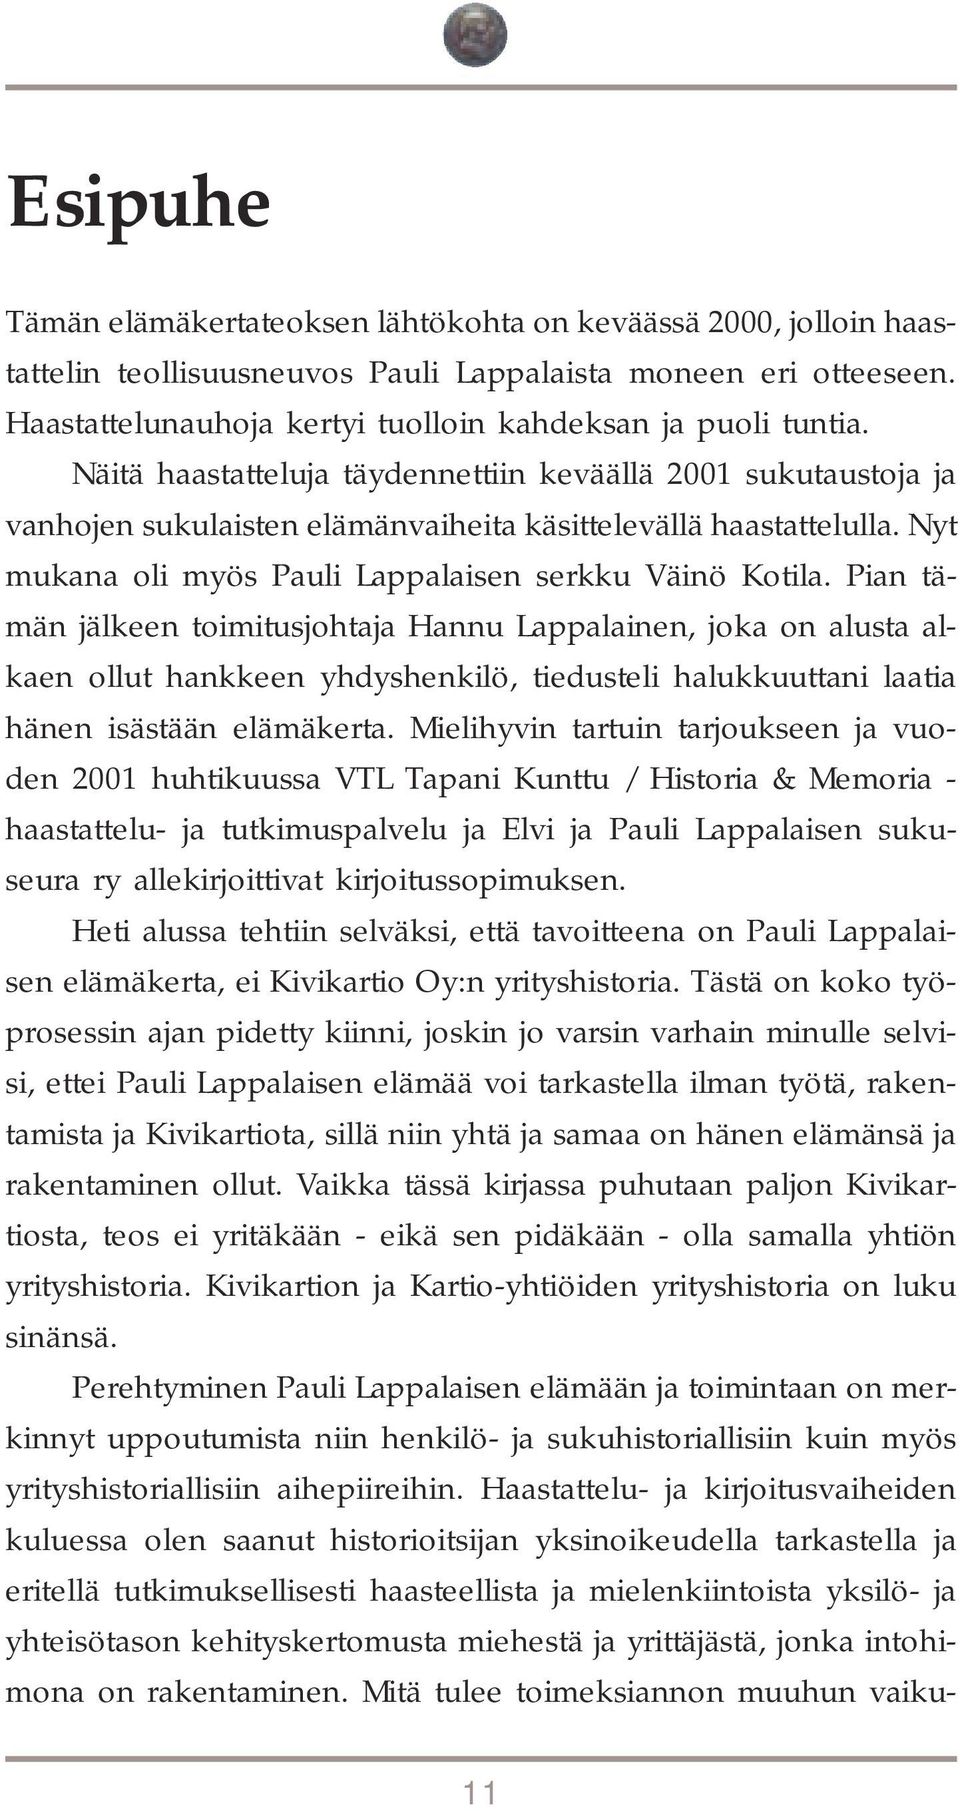 Pian tämän jälkeen toimitusjohtaja Hannu Lappalainen, joka on alusta alkaen ollut hankkeen yhdyshenkilö, tiedusteli halukkuuttani laatia hänen isästään elämäkerta.